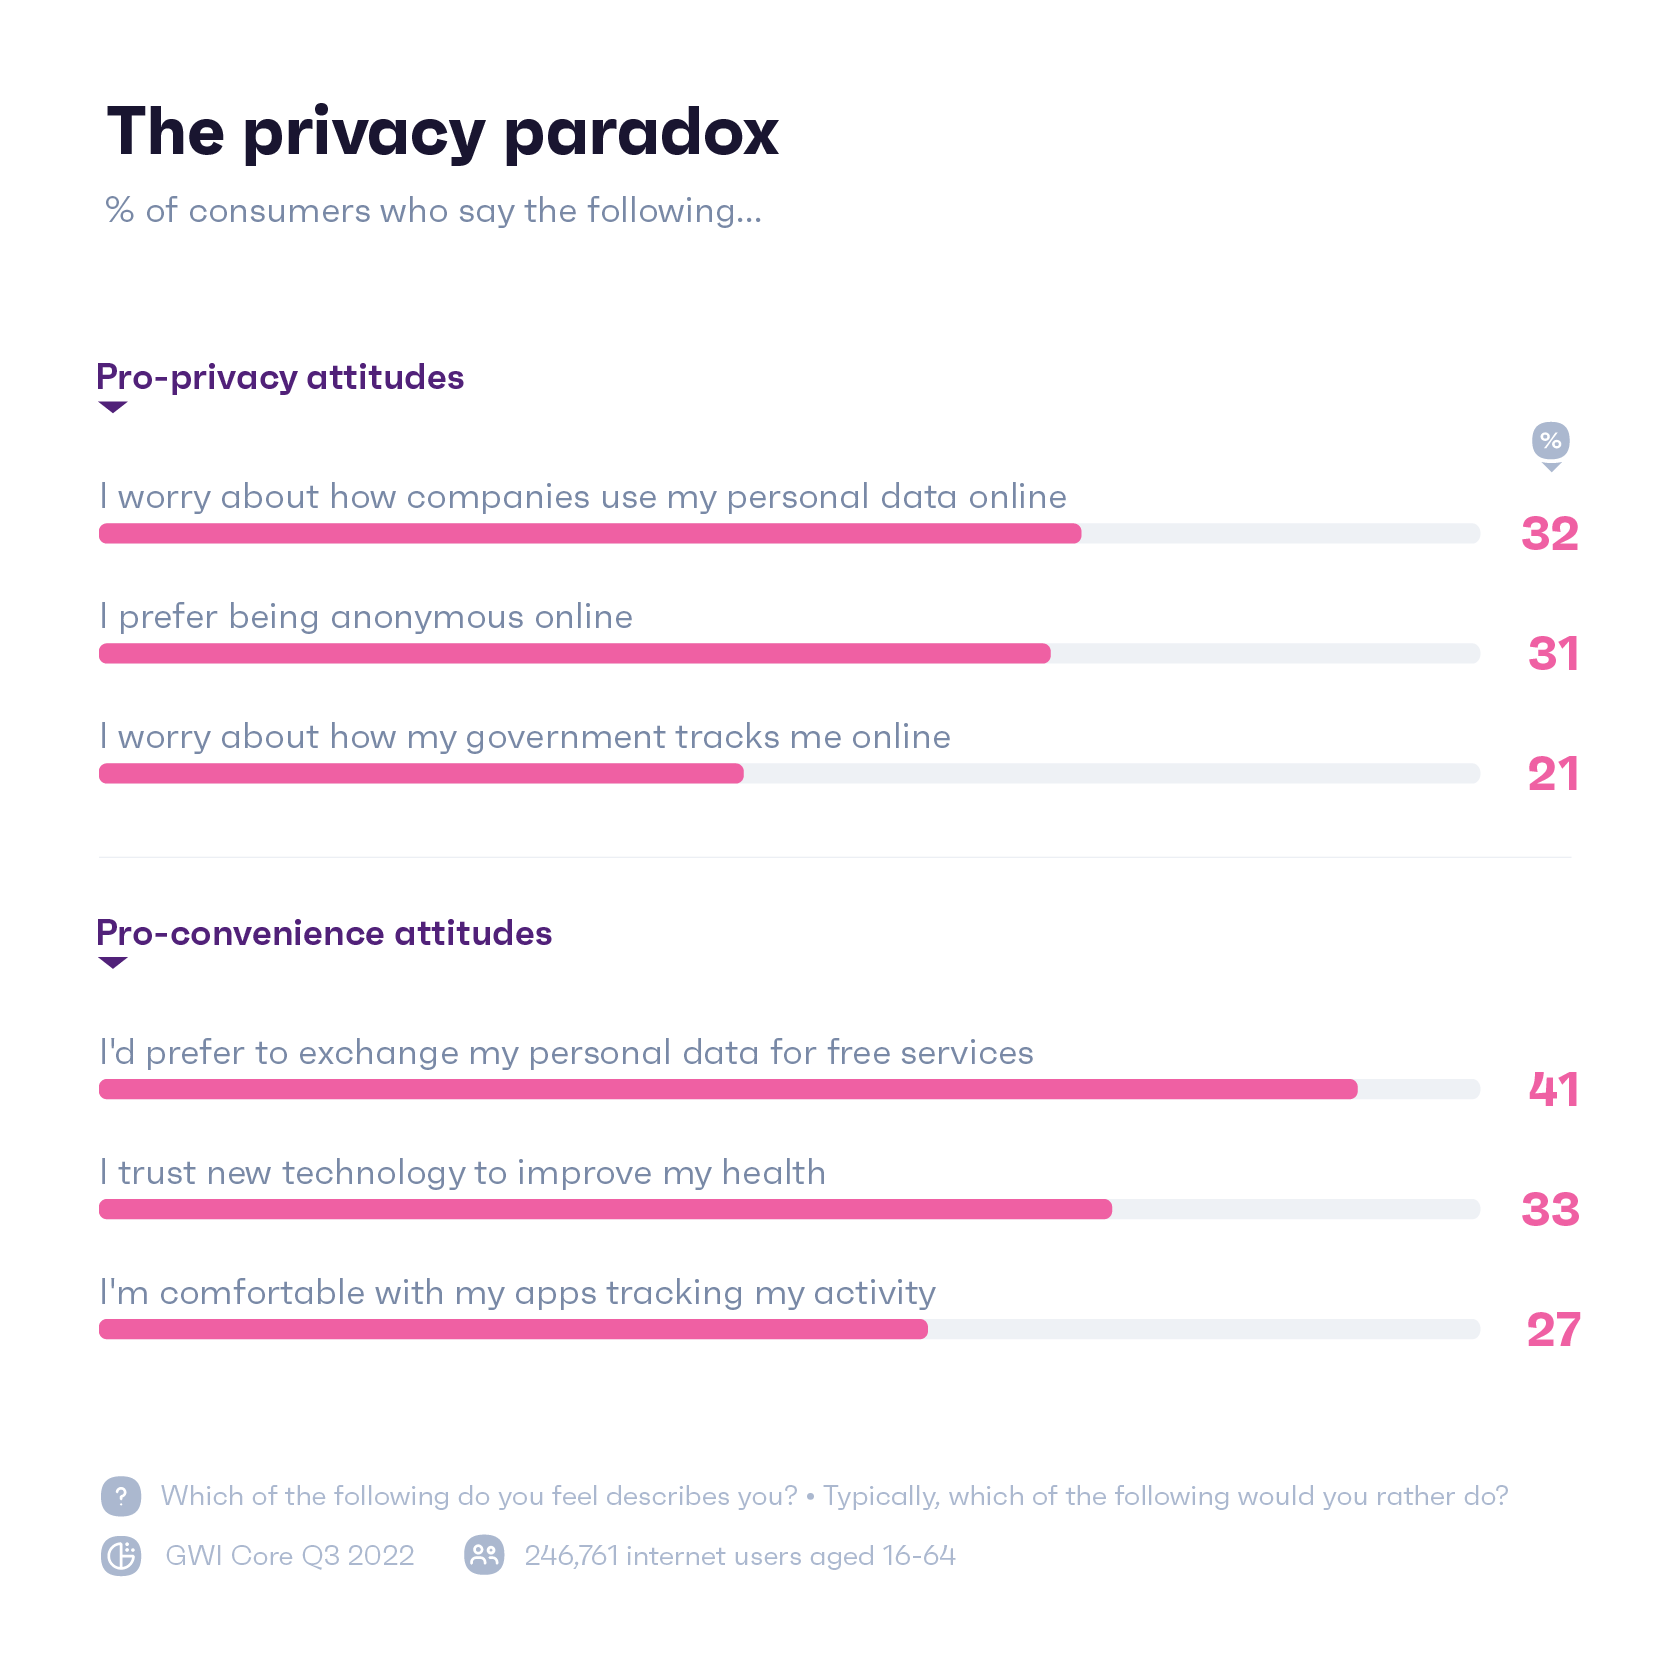 人々がオンライン プライバシー対策についてどのように感じているかを示すグラフ